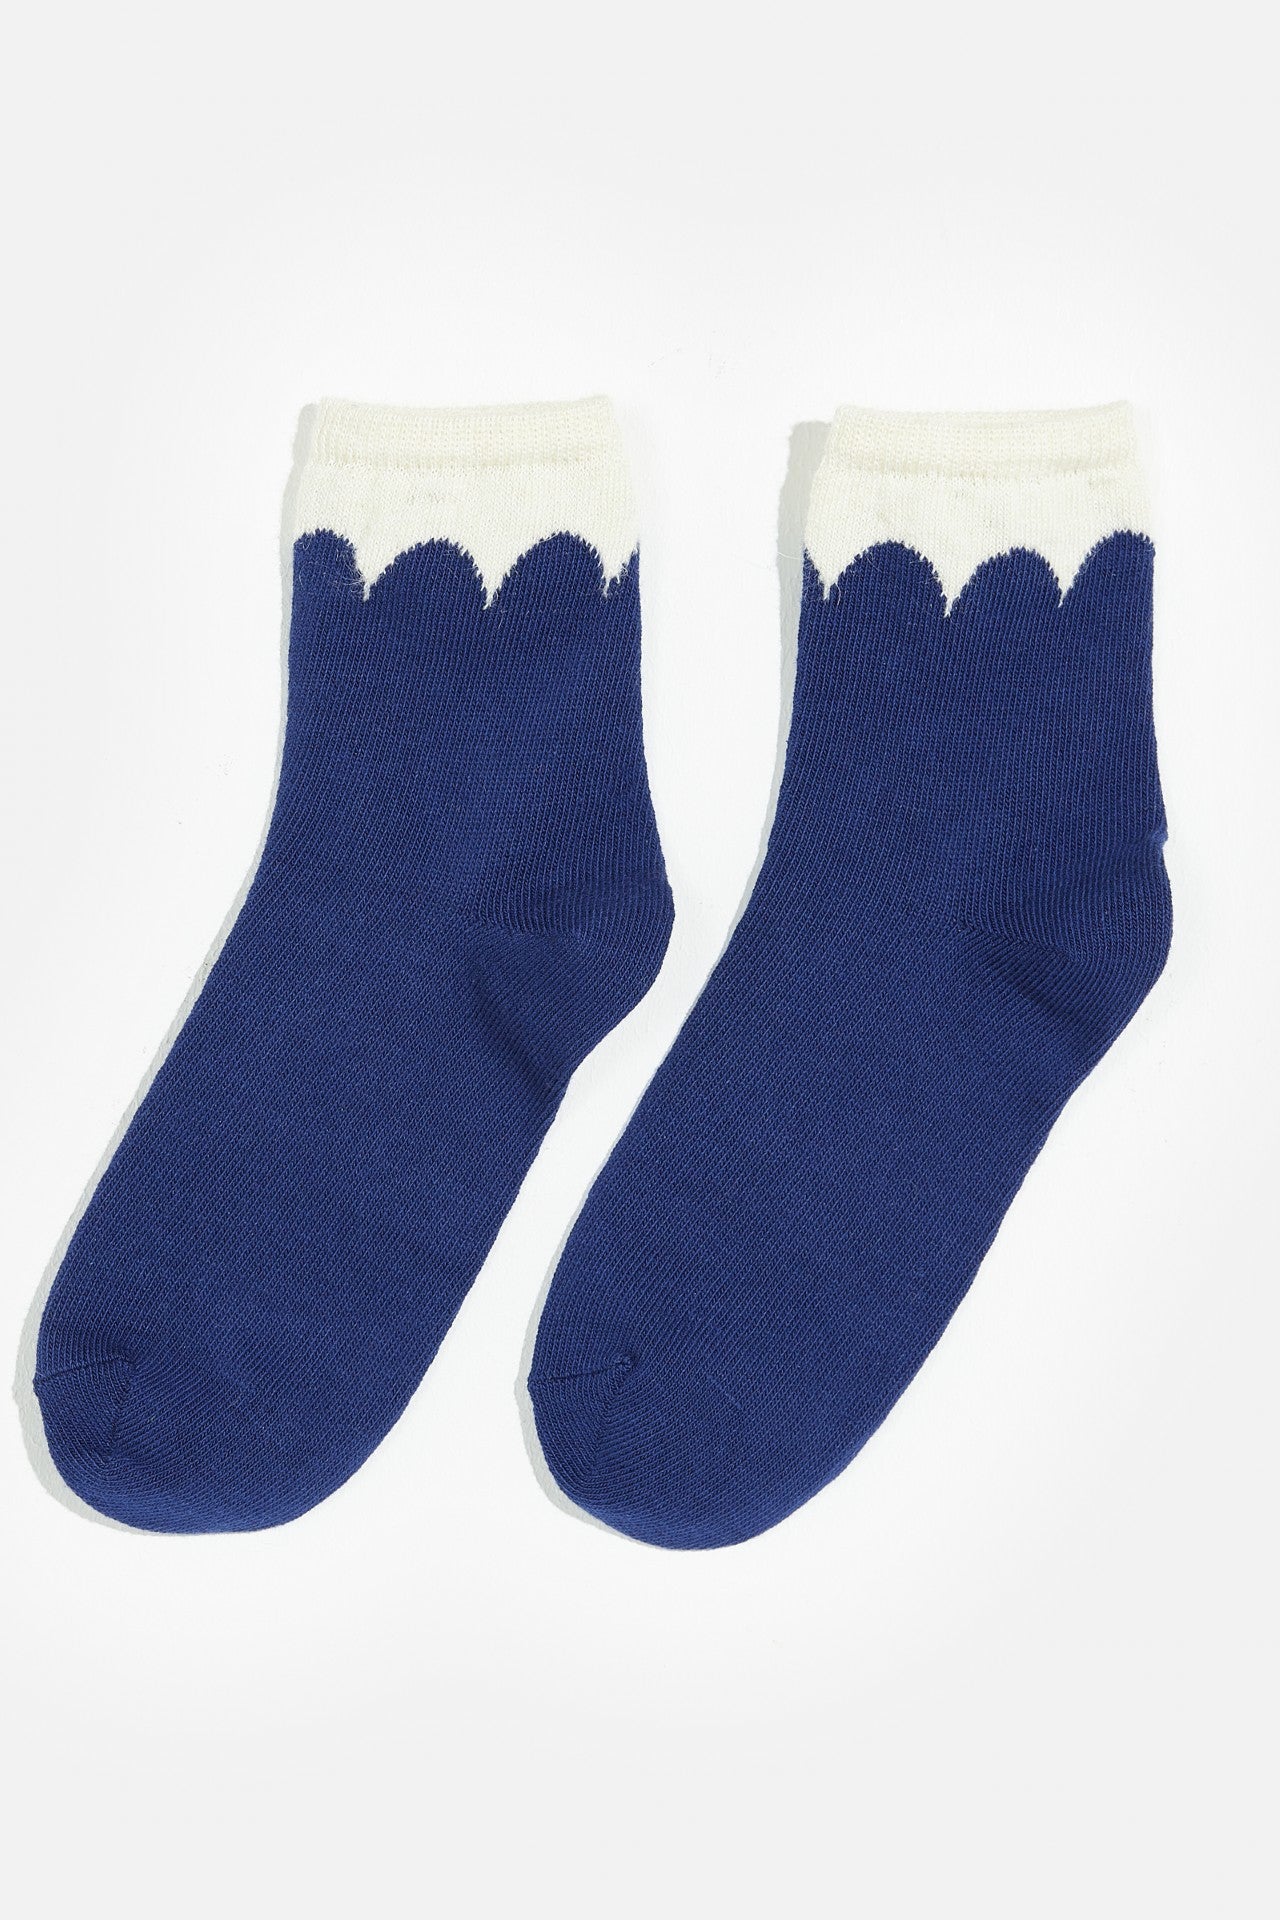 Bohair Socks